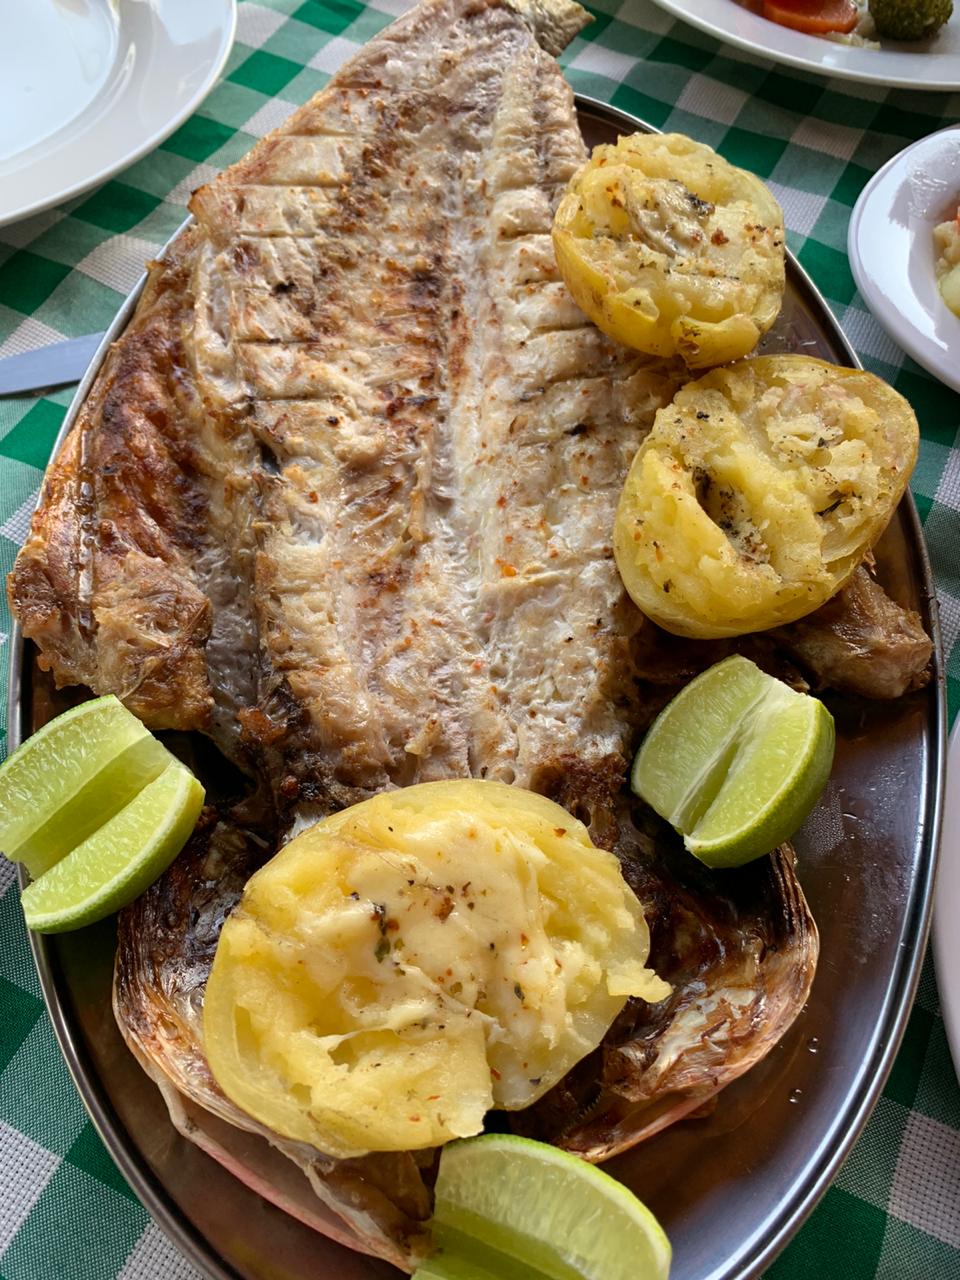 O peixe do dia grelhado na brasa: um guaiúba delicioso!! Servidos com batatas grelhada com queijo e limão